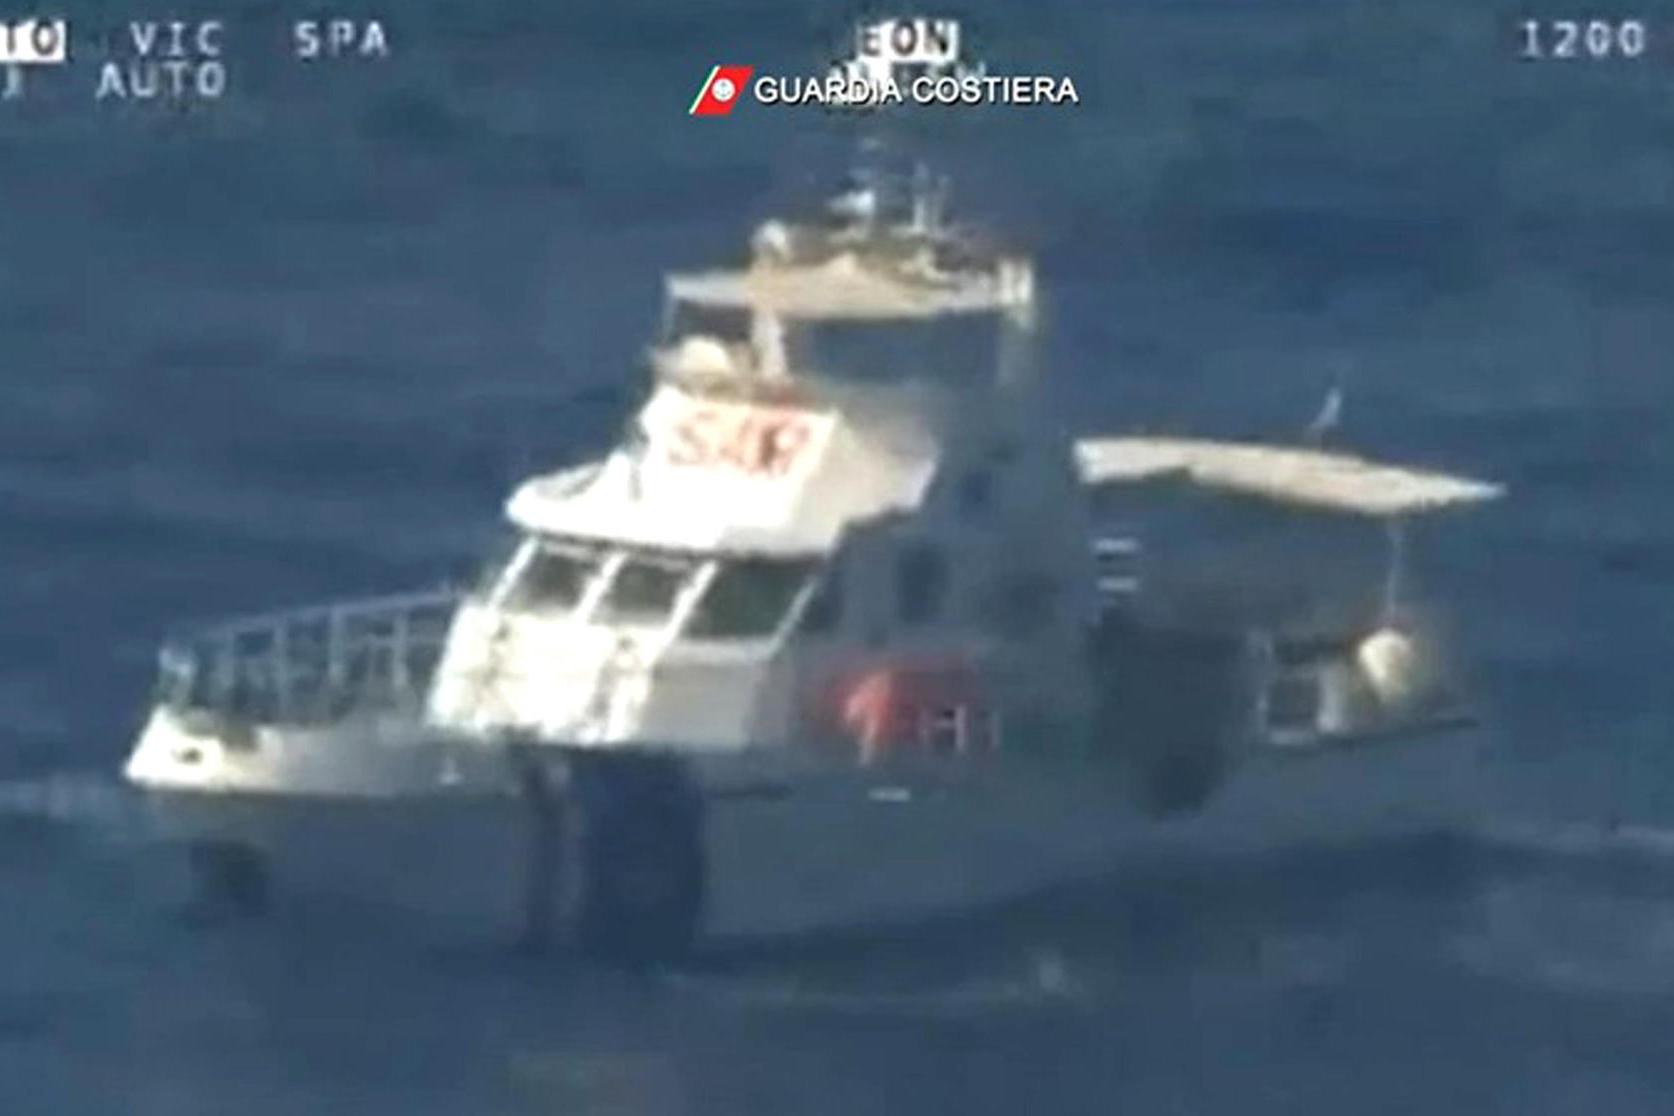 Schiffbruch in der Adria, ein Matrose aus Tortolì stirbt